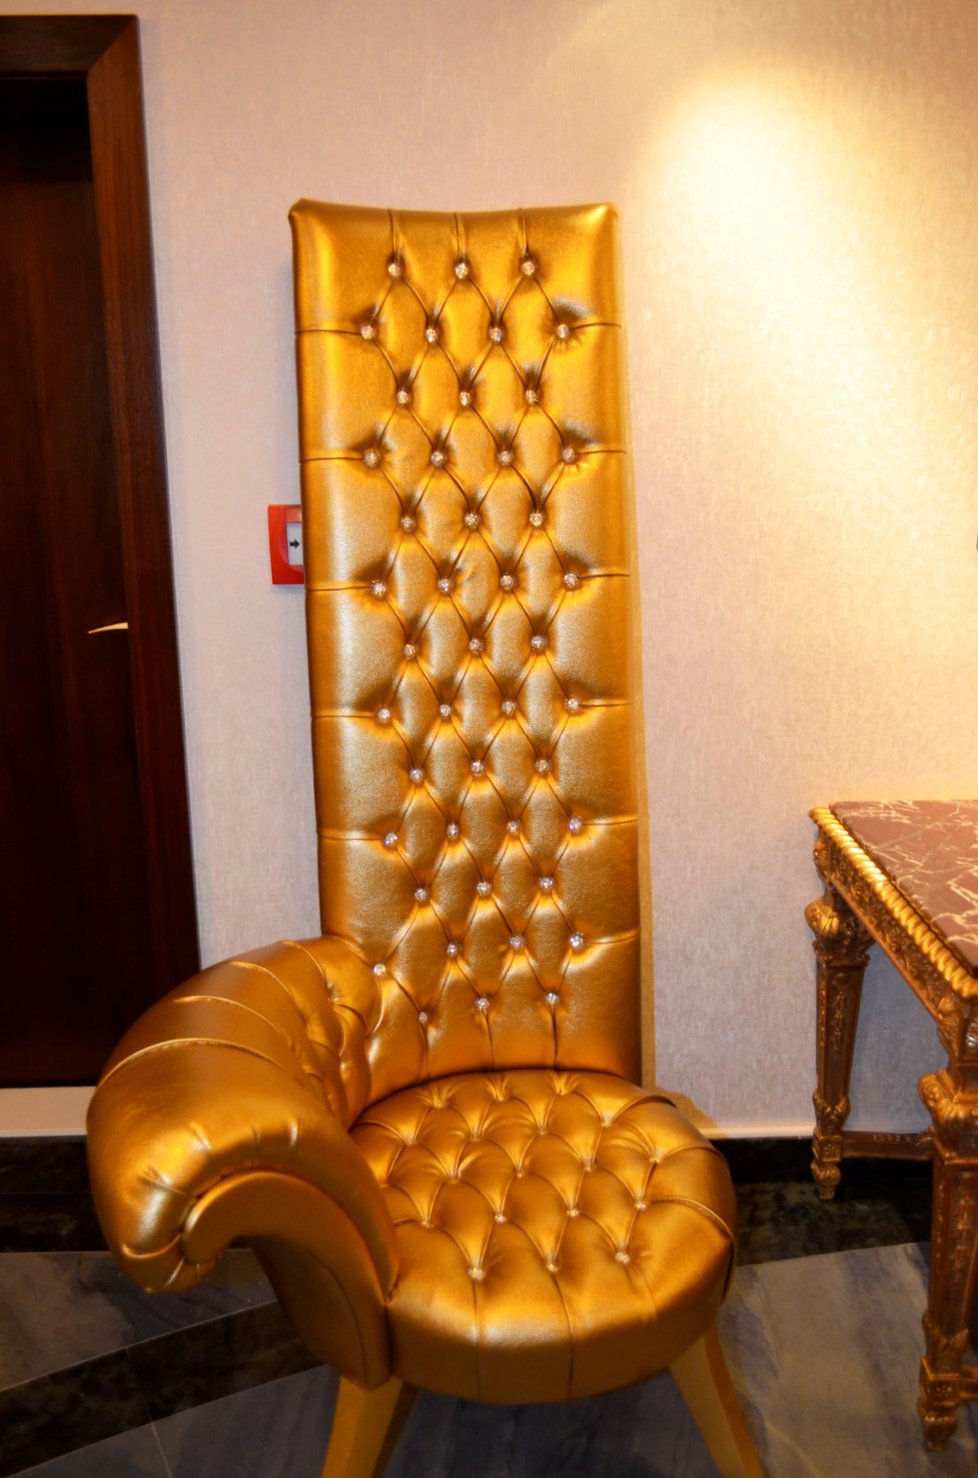 Hráči si budou užívat nebývalého luxusu. Tohle je židle Swarovski za půl miliónu korun.